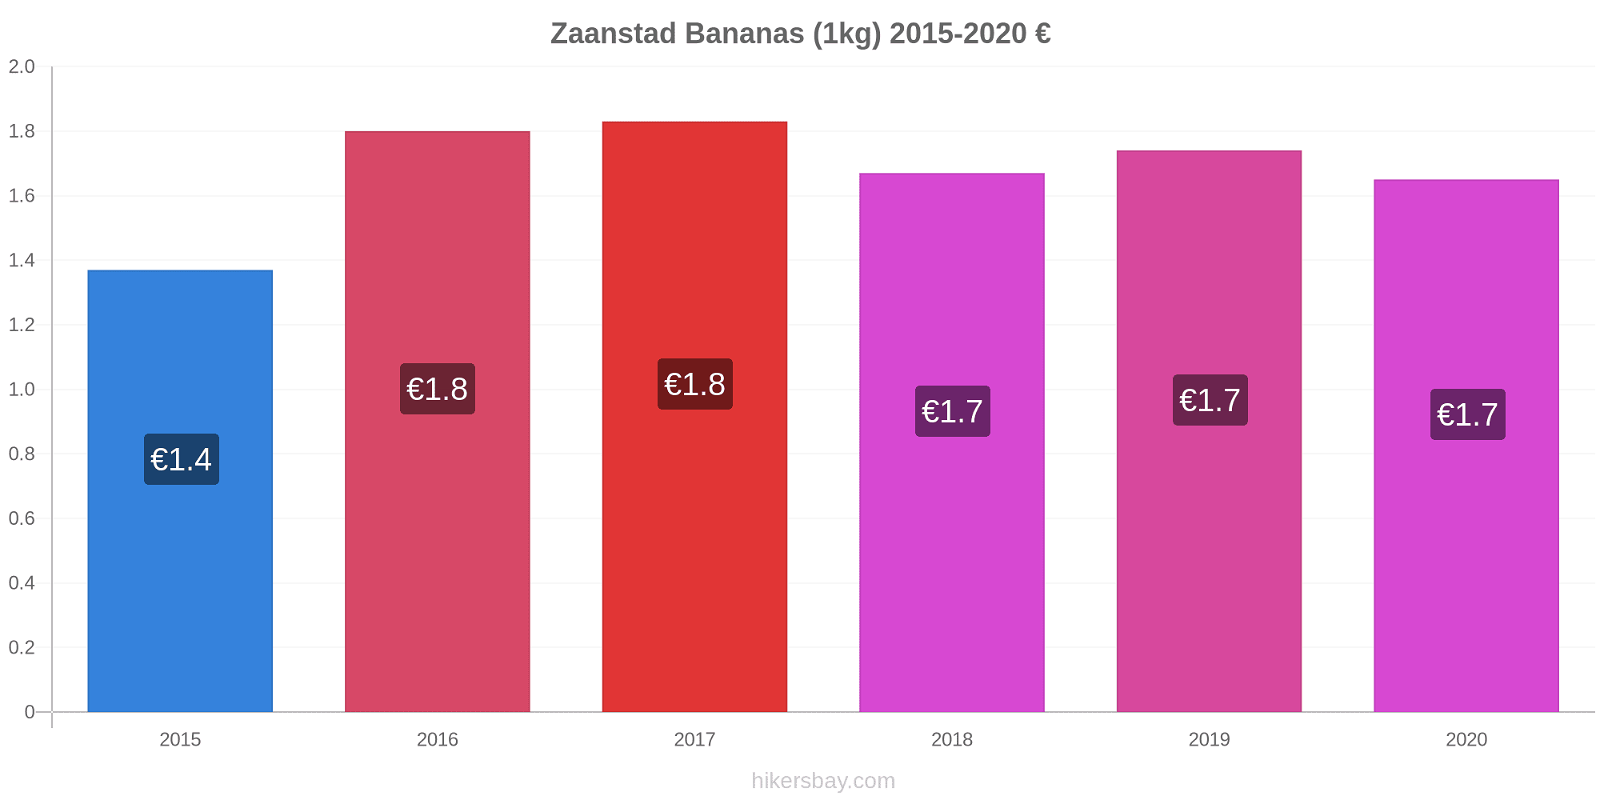 Zaanstad price changes Bananas (1kg) hikersbay.com